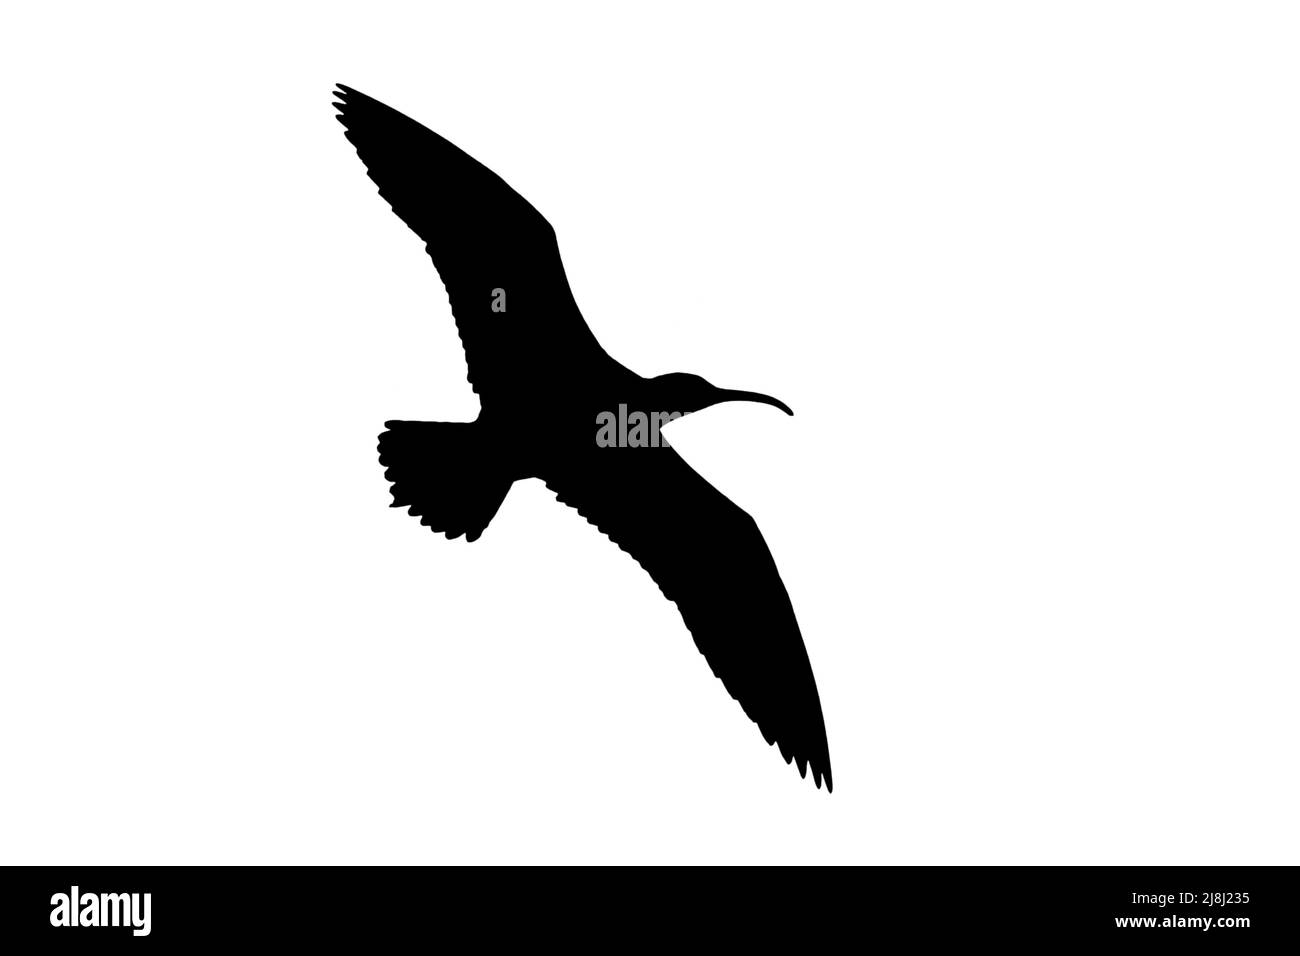 Silueta del whimbrel eurasiano (Numenius phaeopus) en vuelo contorneado sobre fondo blanco para mostrar alas, cabeza y cola Foto de stock